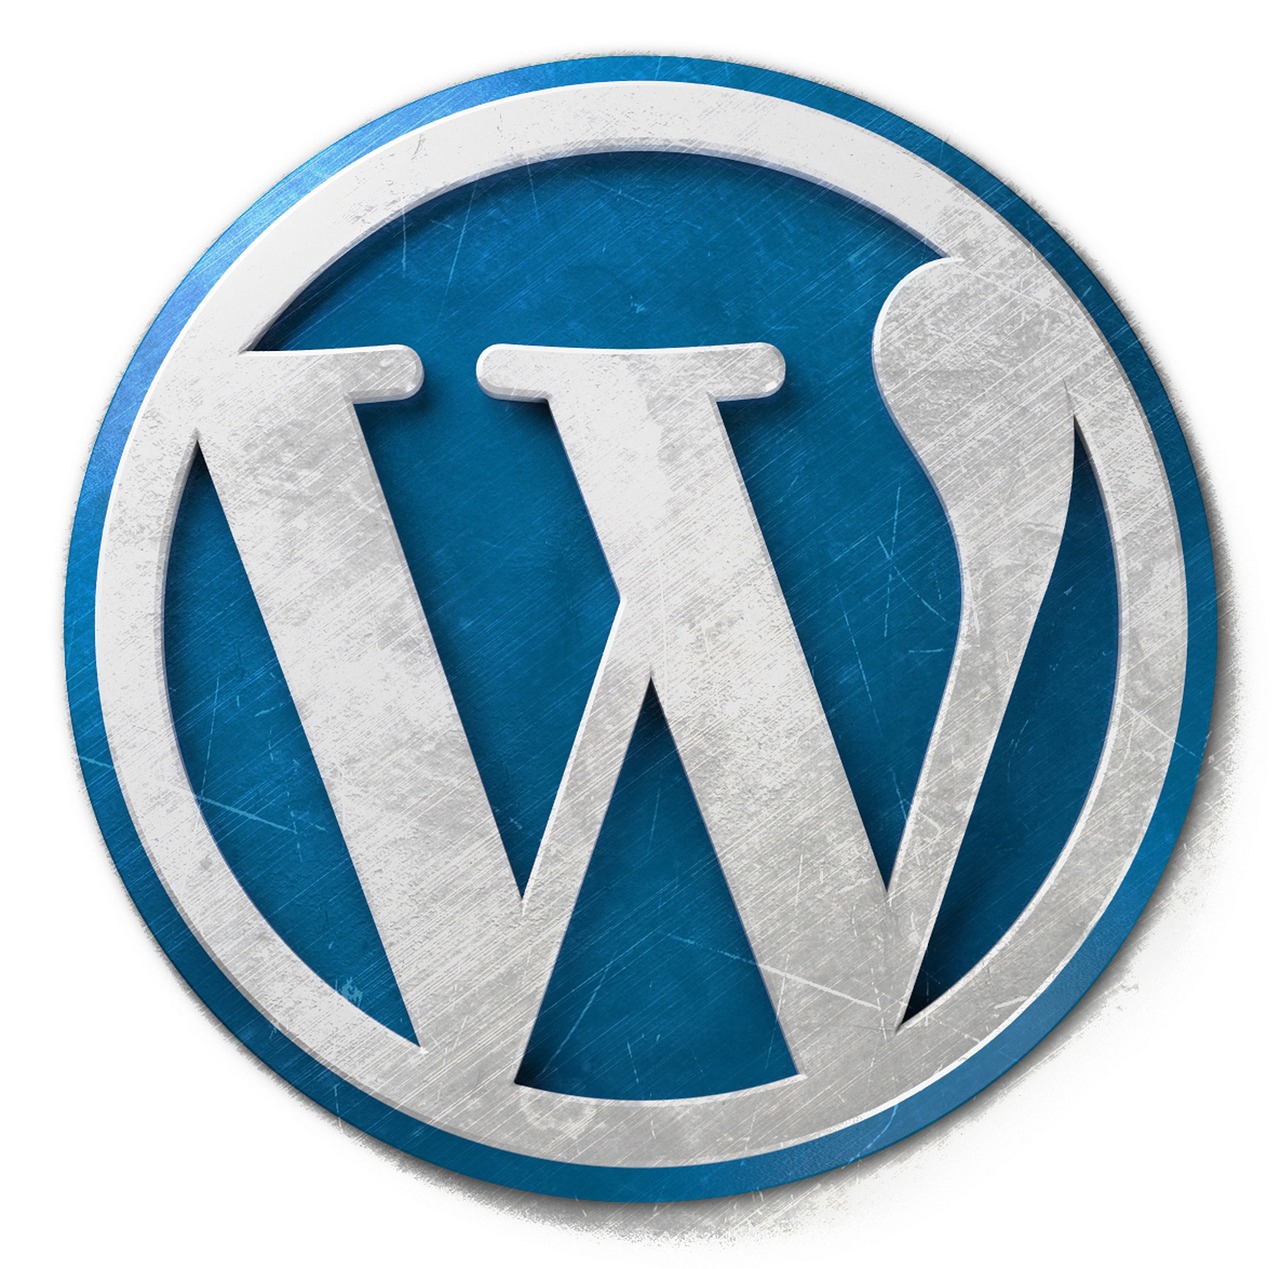 Co to jest WordPress? – Karolina Barc – Wirtualna Asystentka